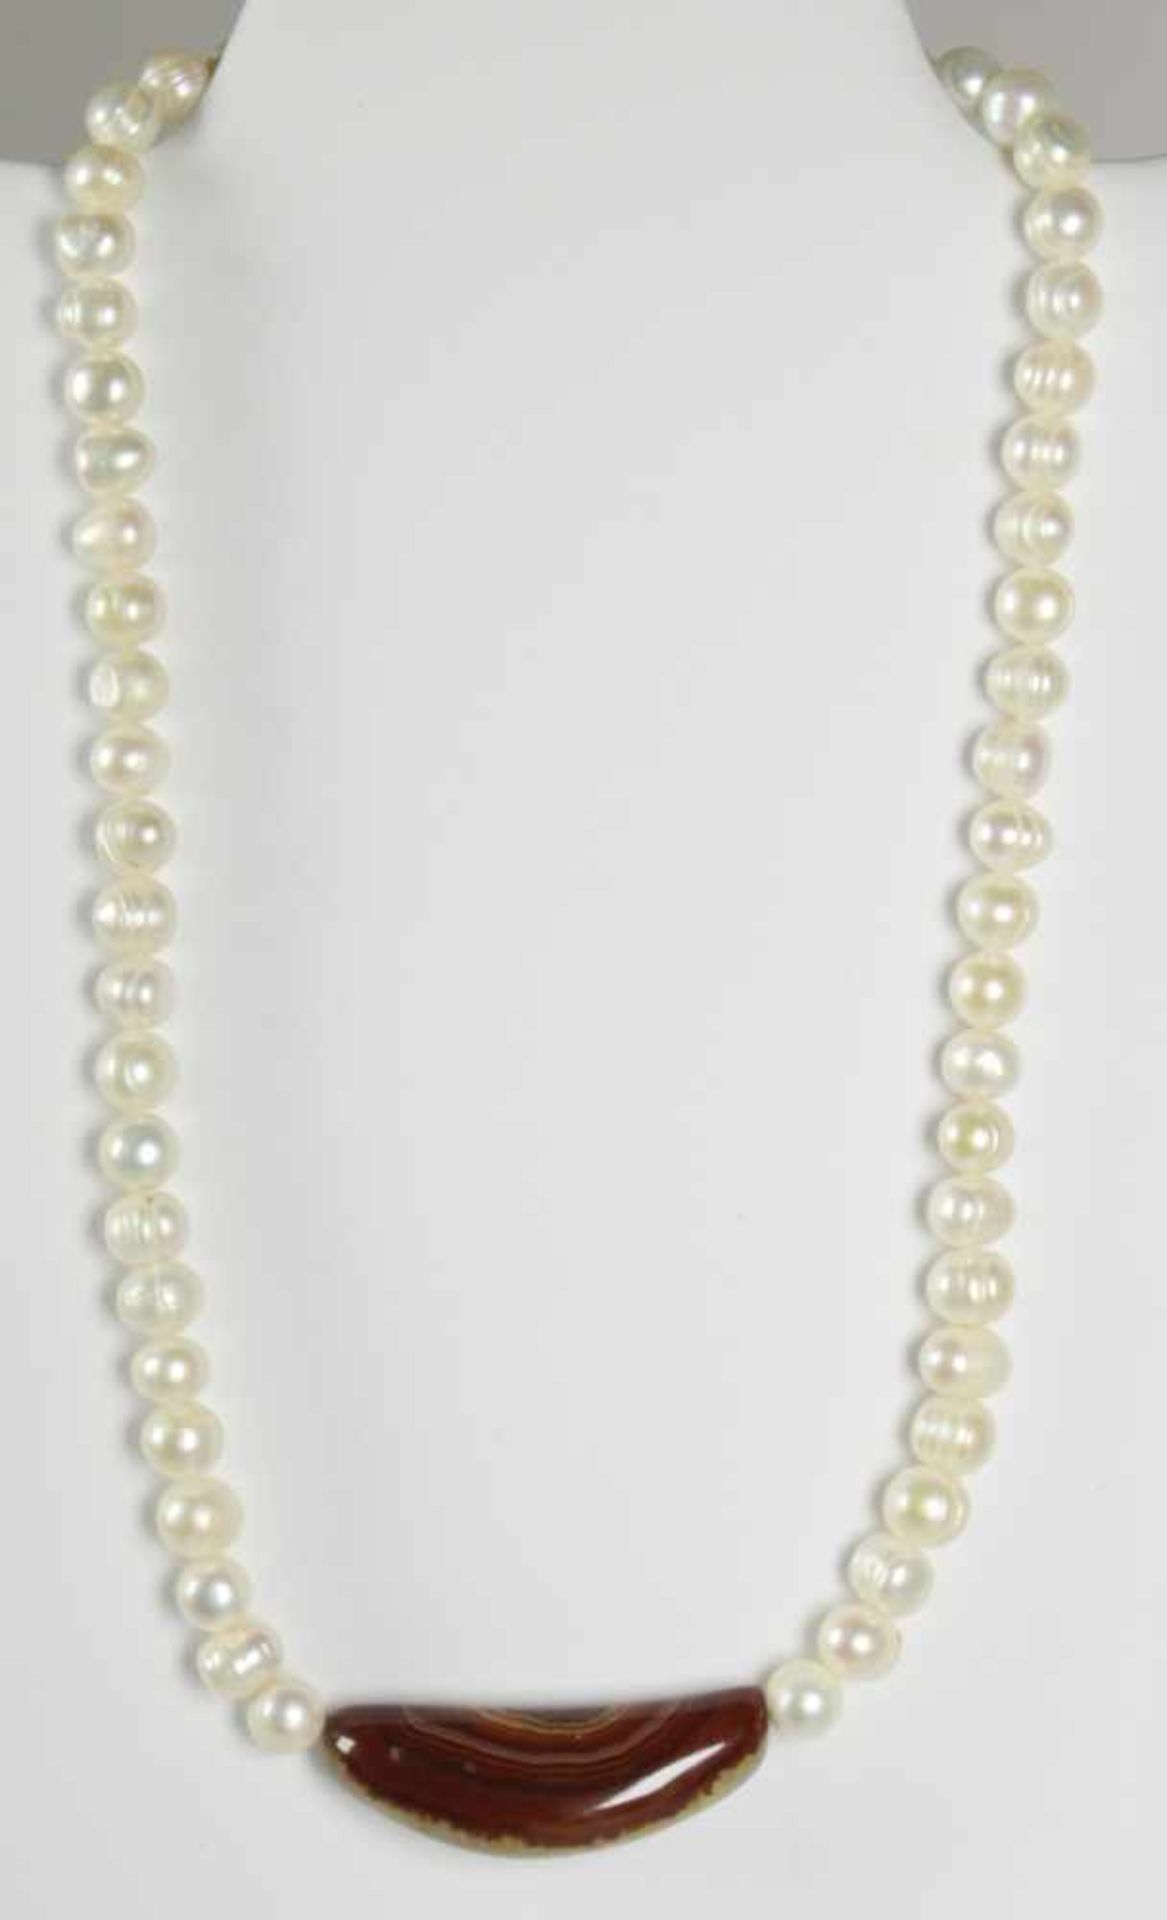 Süsswasserperlen-Halskette, Choker gefädelt, D ca. 9 mm, Farbe: weiß, Mittelteil gefertigtaus Achat,